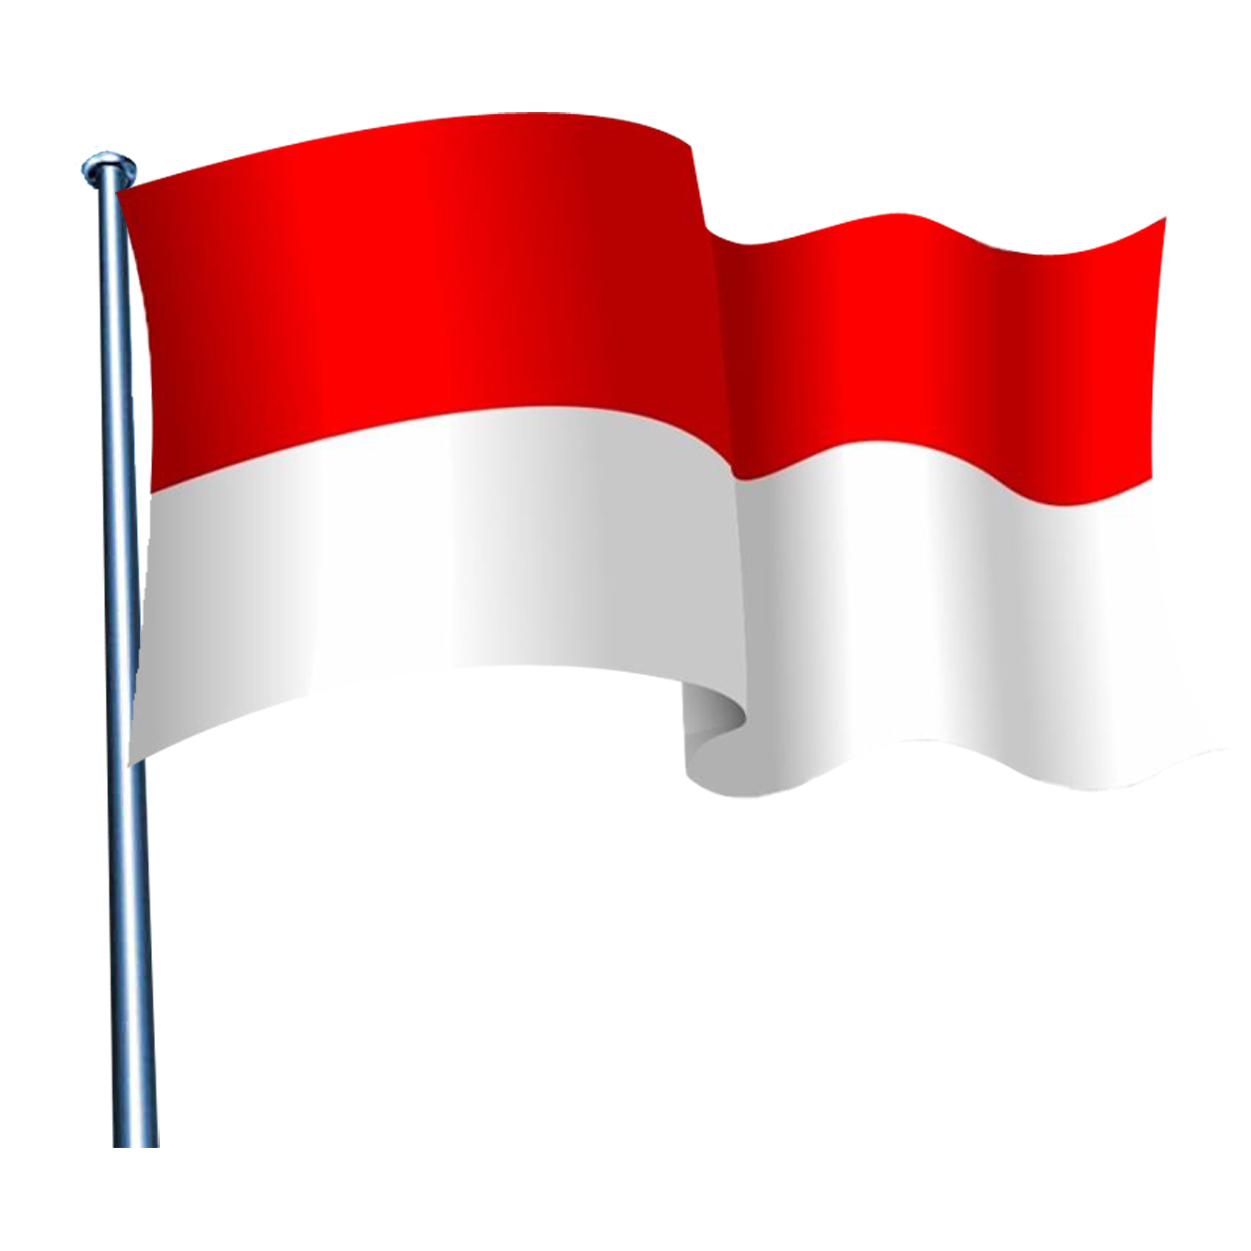 Gambar Bendera Merah  Putih Vector PNG dan JPEG Terbaik 